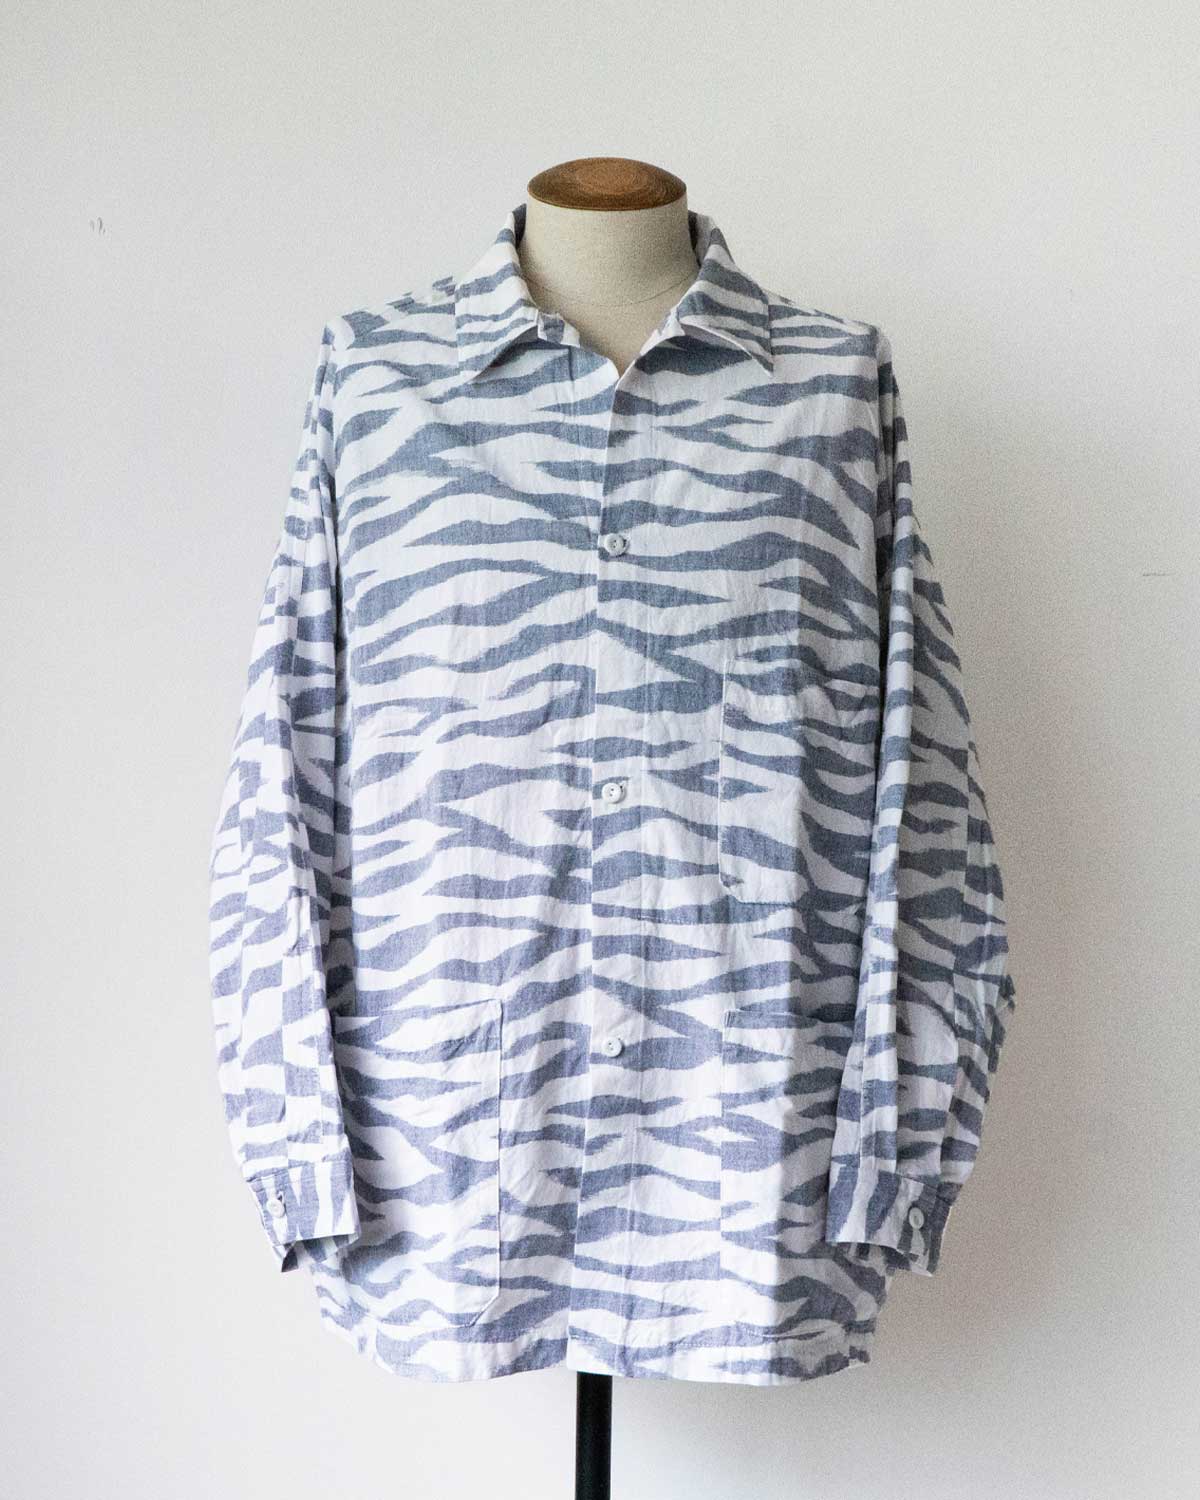 sowbow shirts type H sports jacket -zebra-